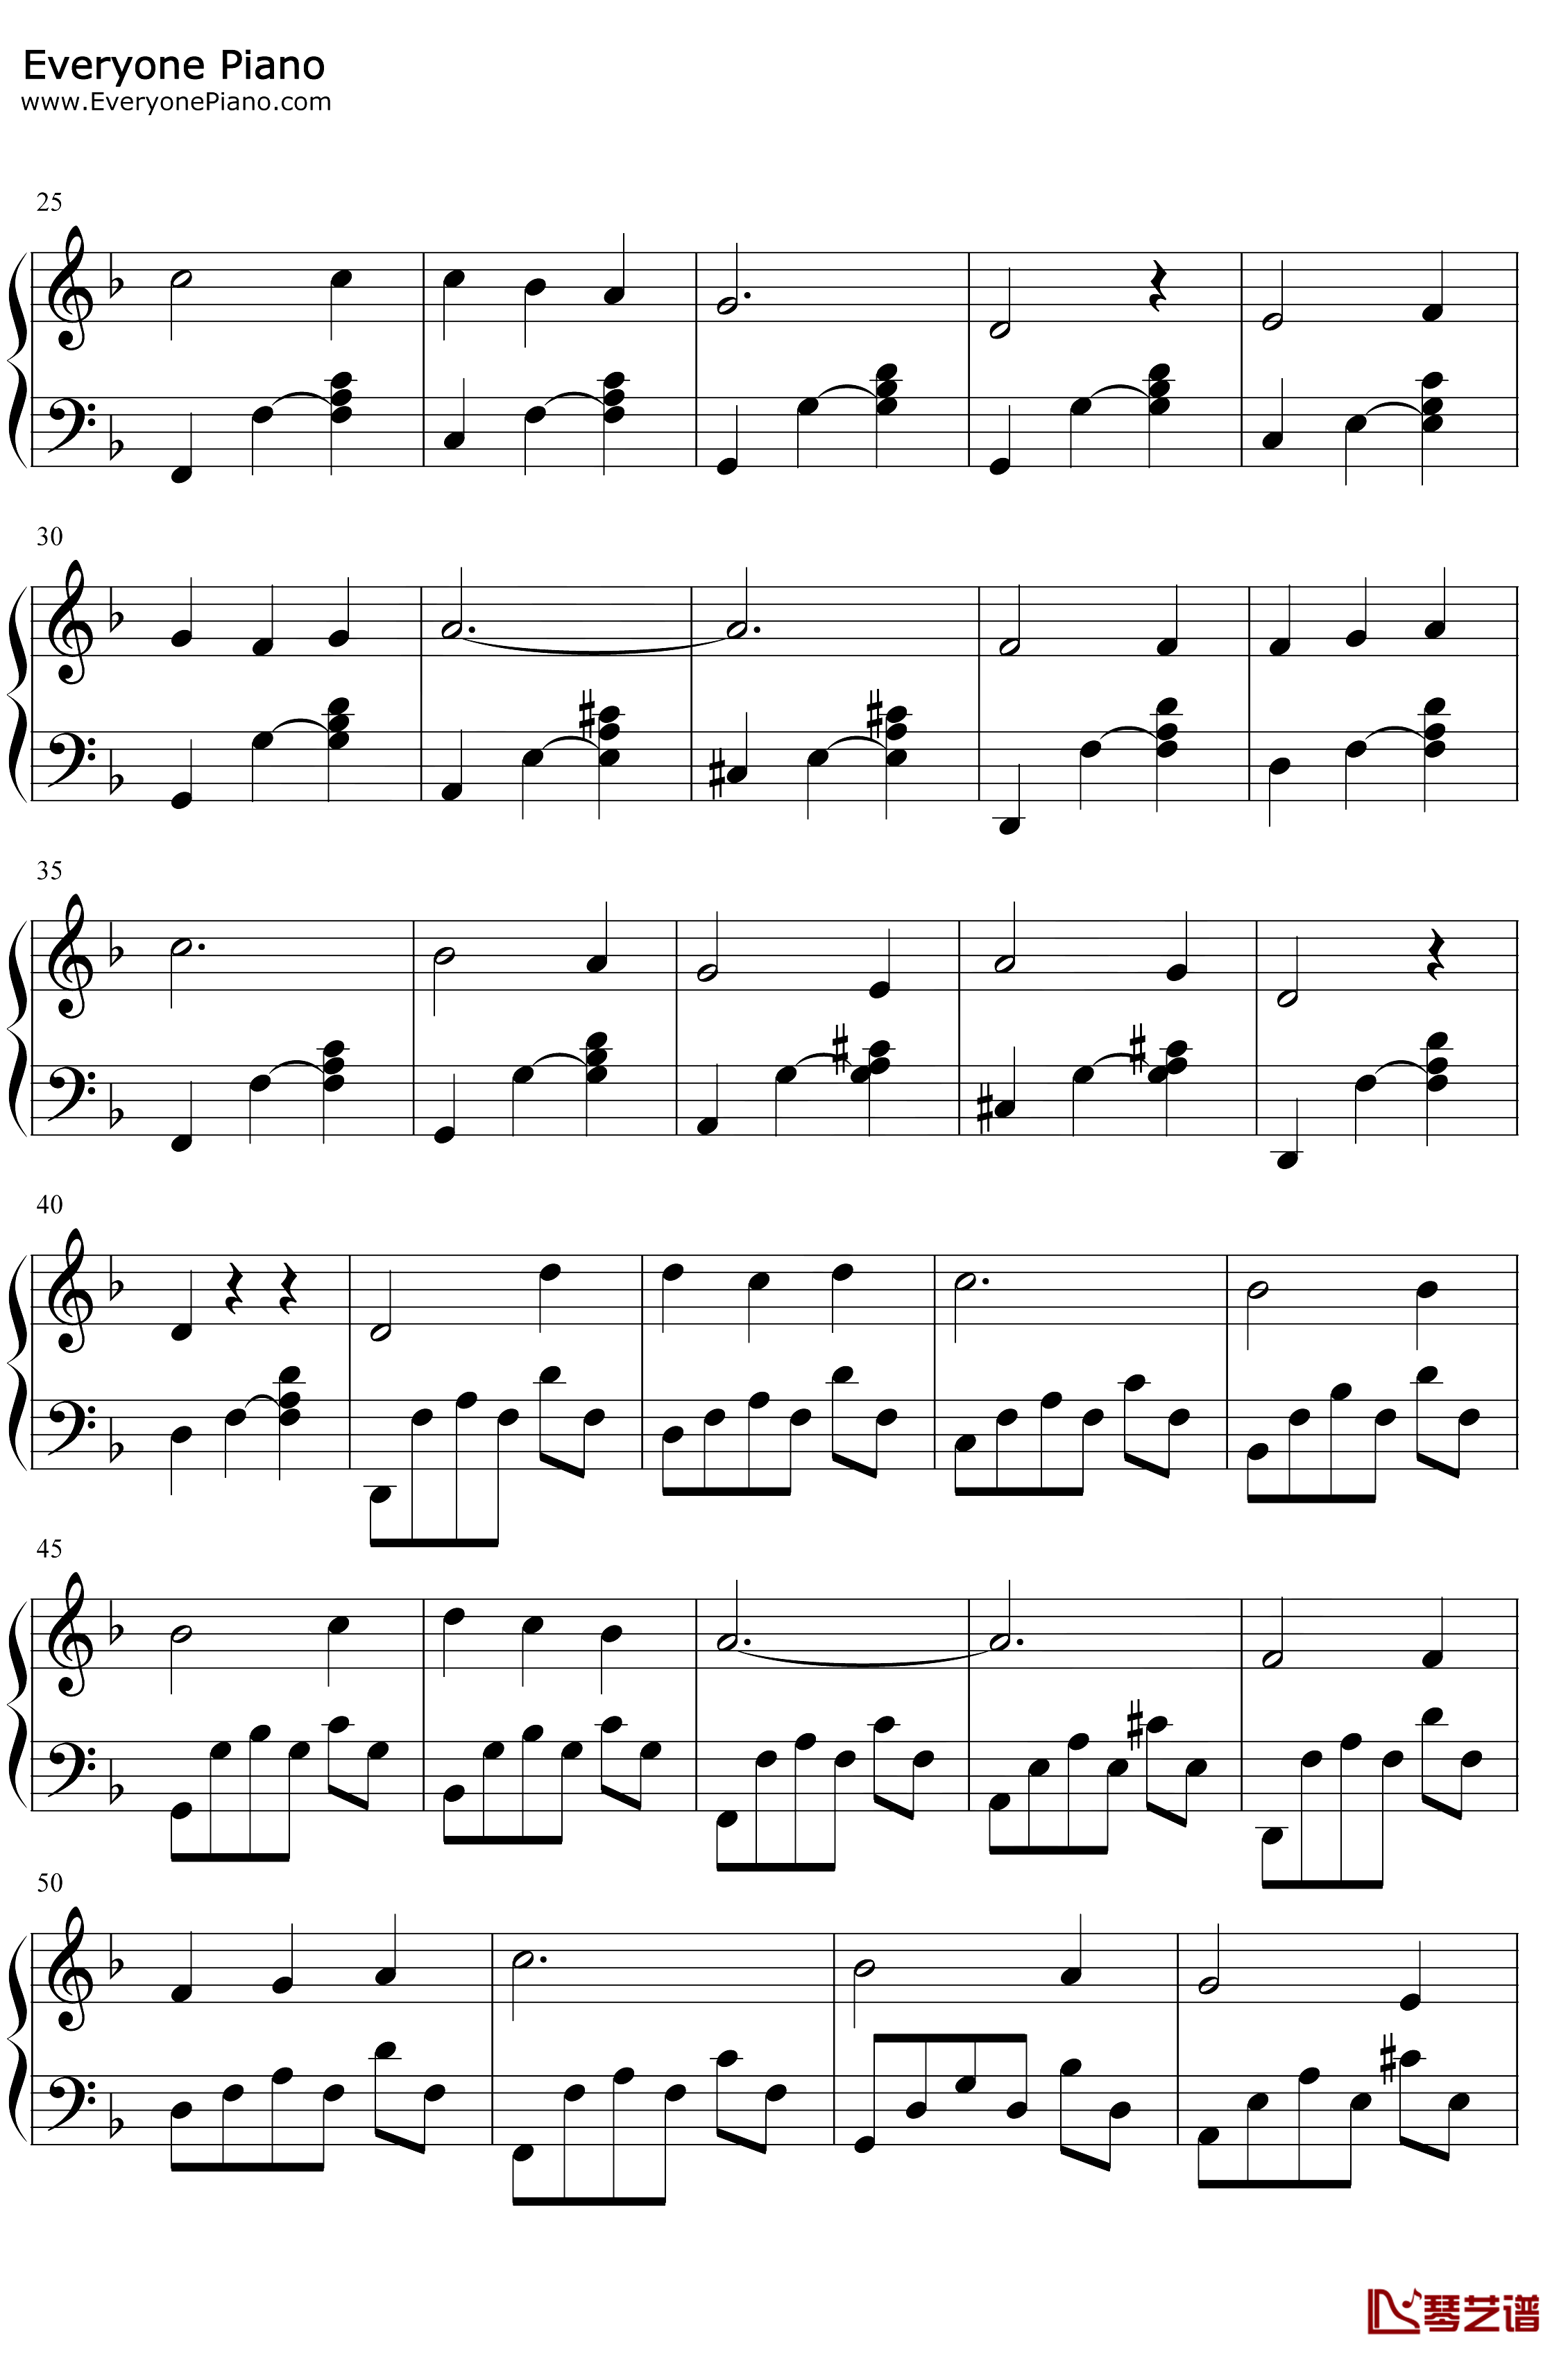 山楂树钢琴谱-叶甫根尼·巴普罗维奇·罗德金-乌拉尔的花楸树-1953年苏联时期爱情歌曲2